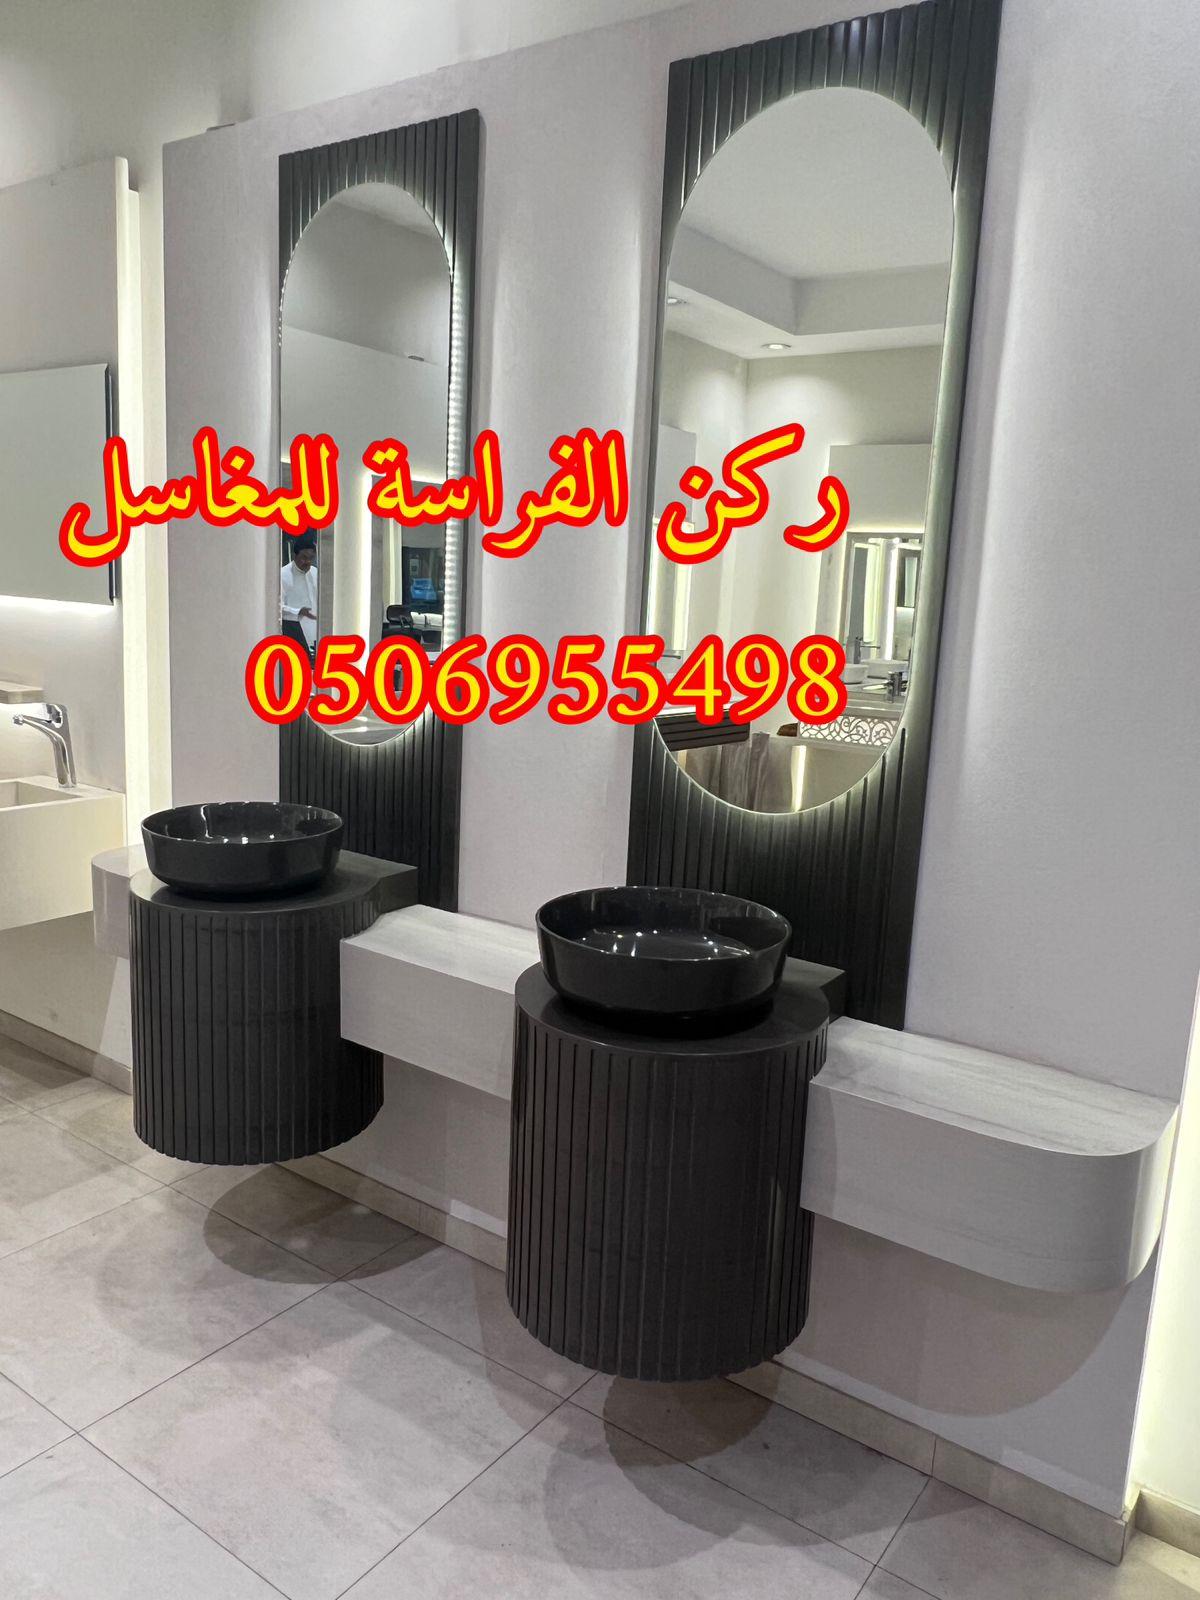 ديكورات مغاسل حمامات رخام في الرياض,0506955498 746755363